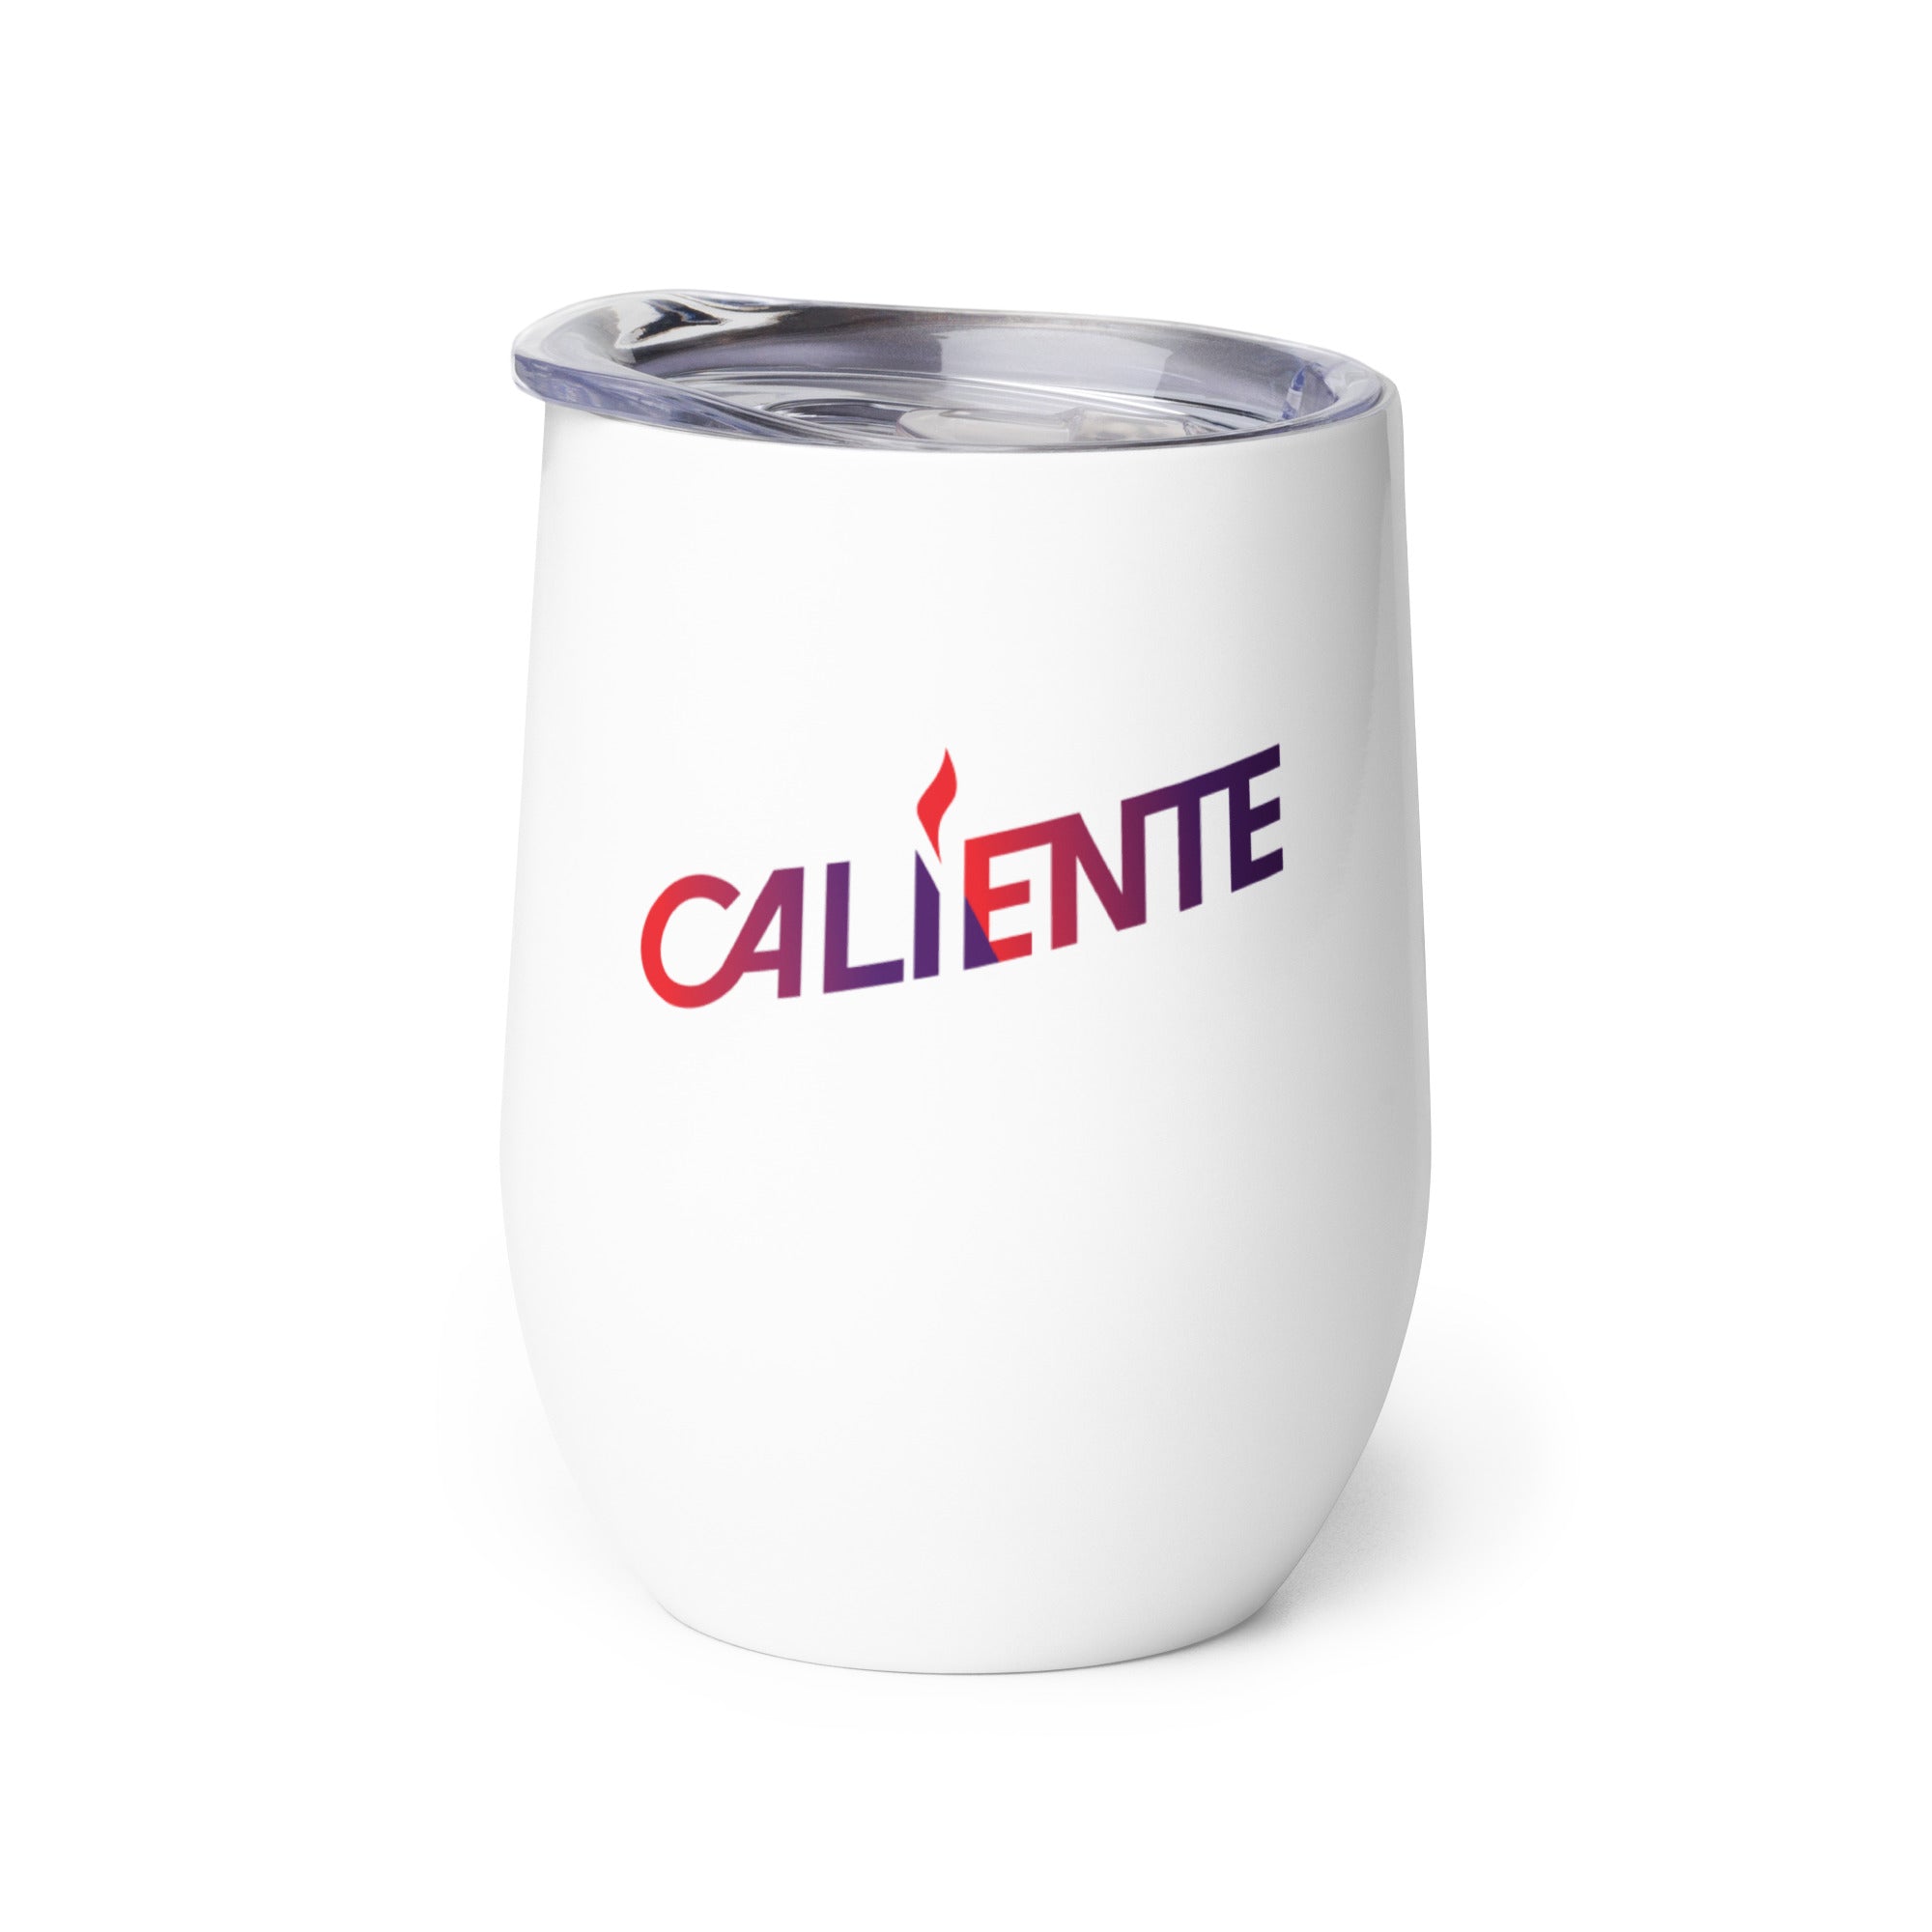 Caliente: Wine Tumbler